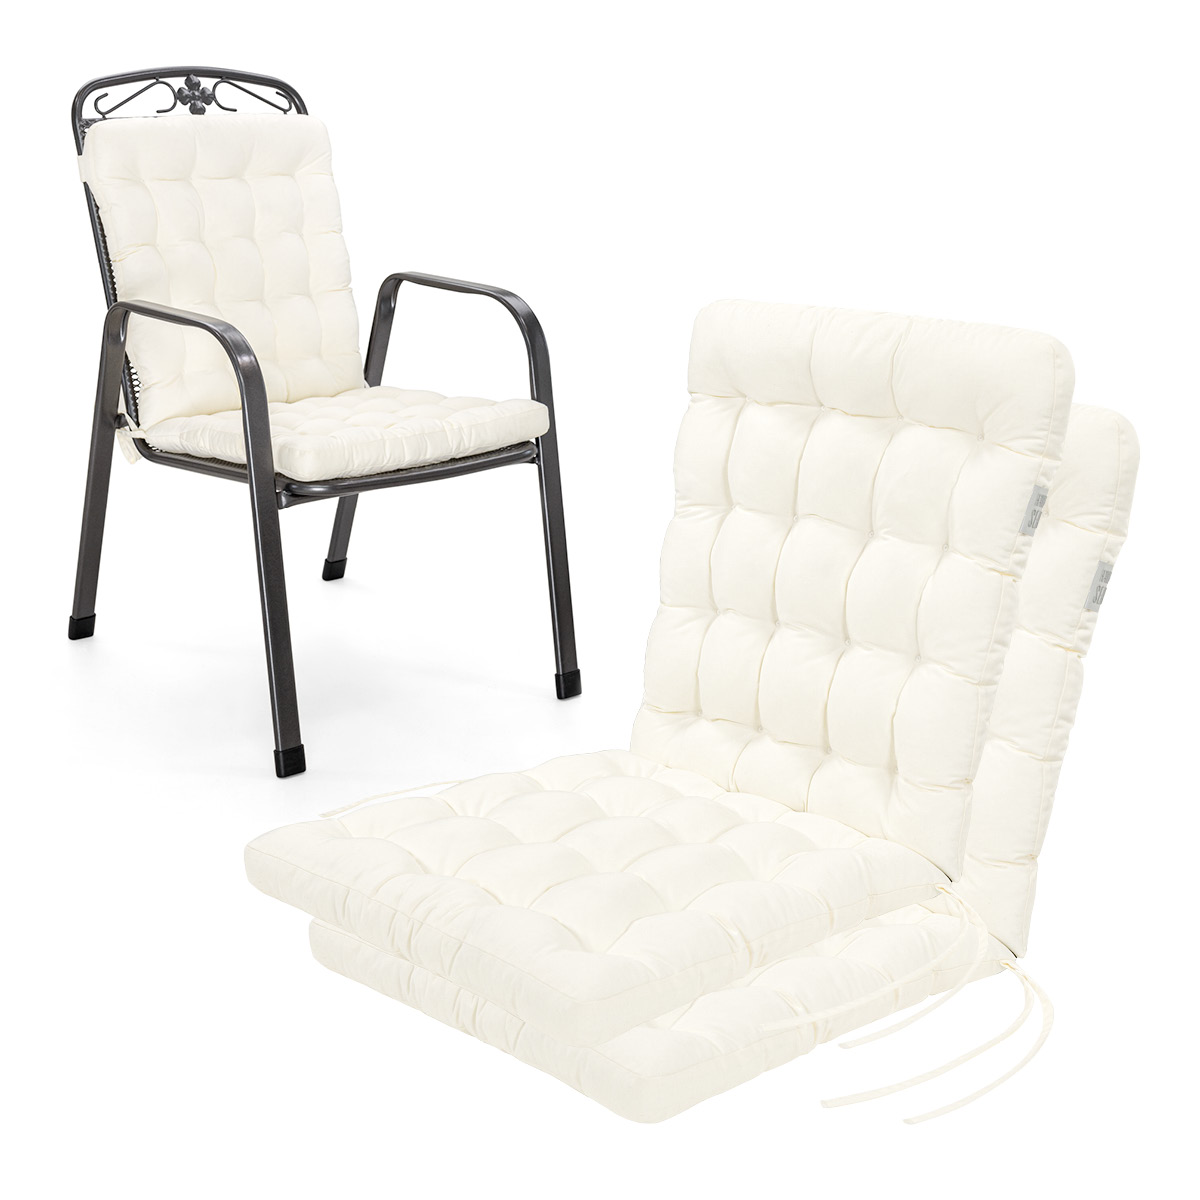 Cuscino per sedia con schienale basso 100x48 cm | Bianco | Set da 2 %